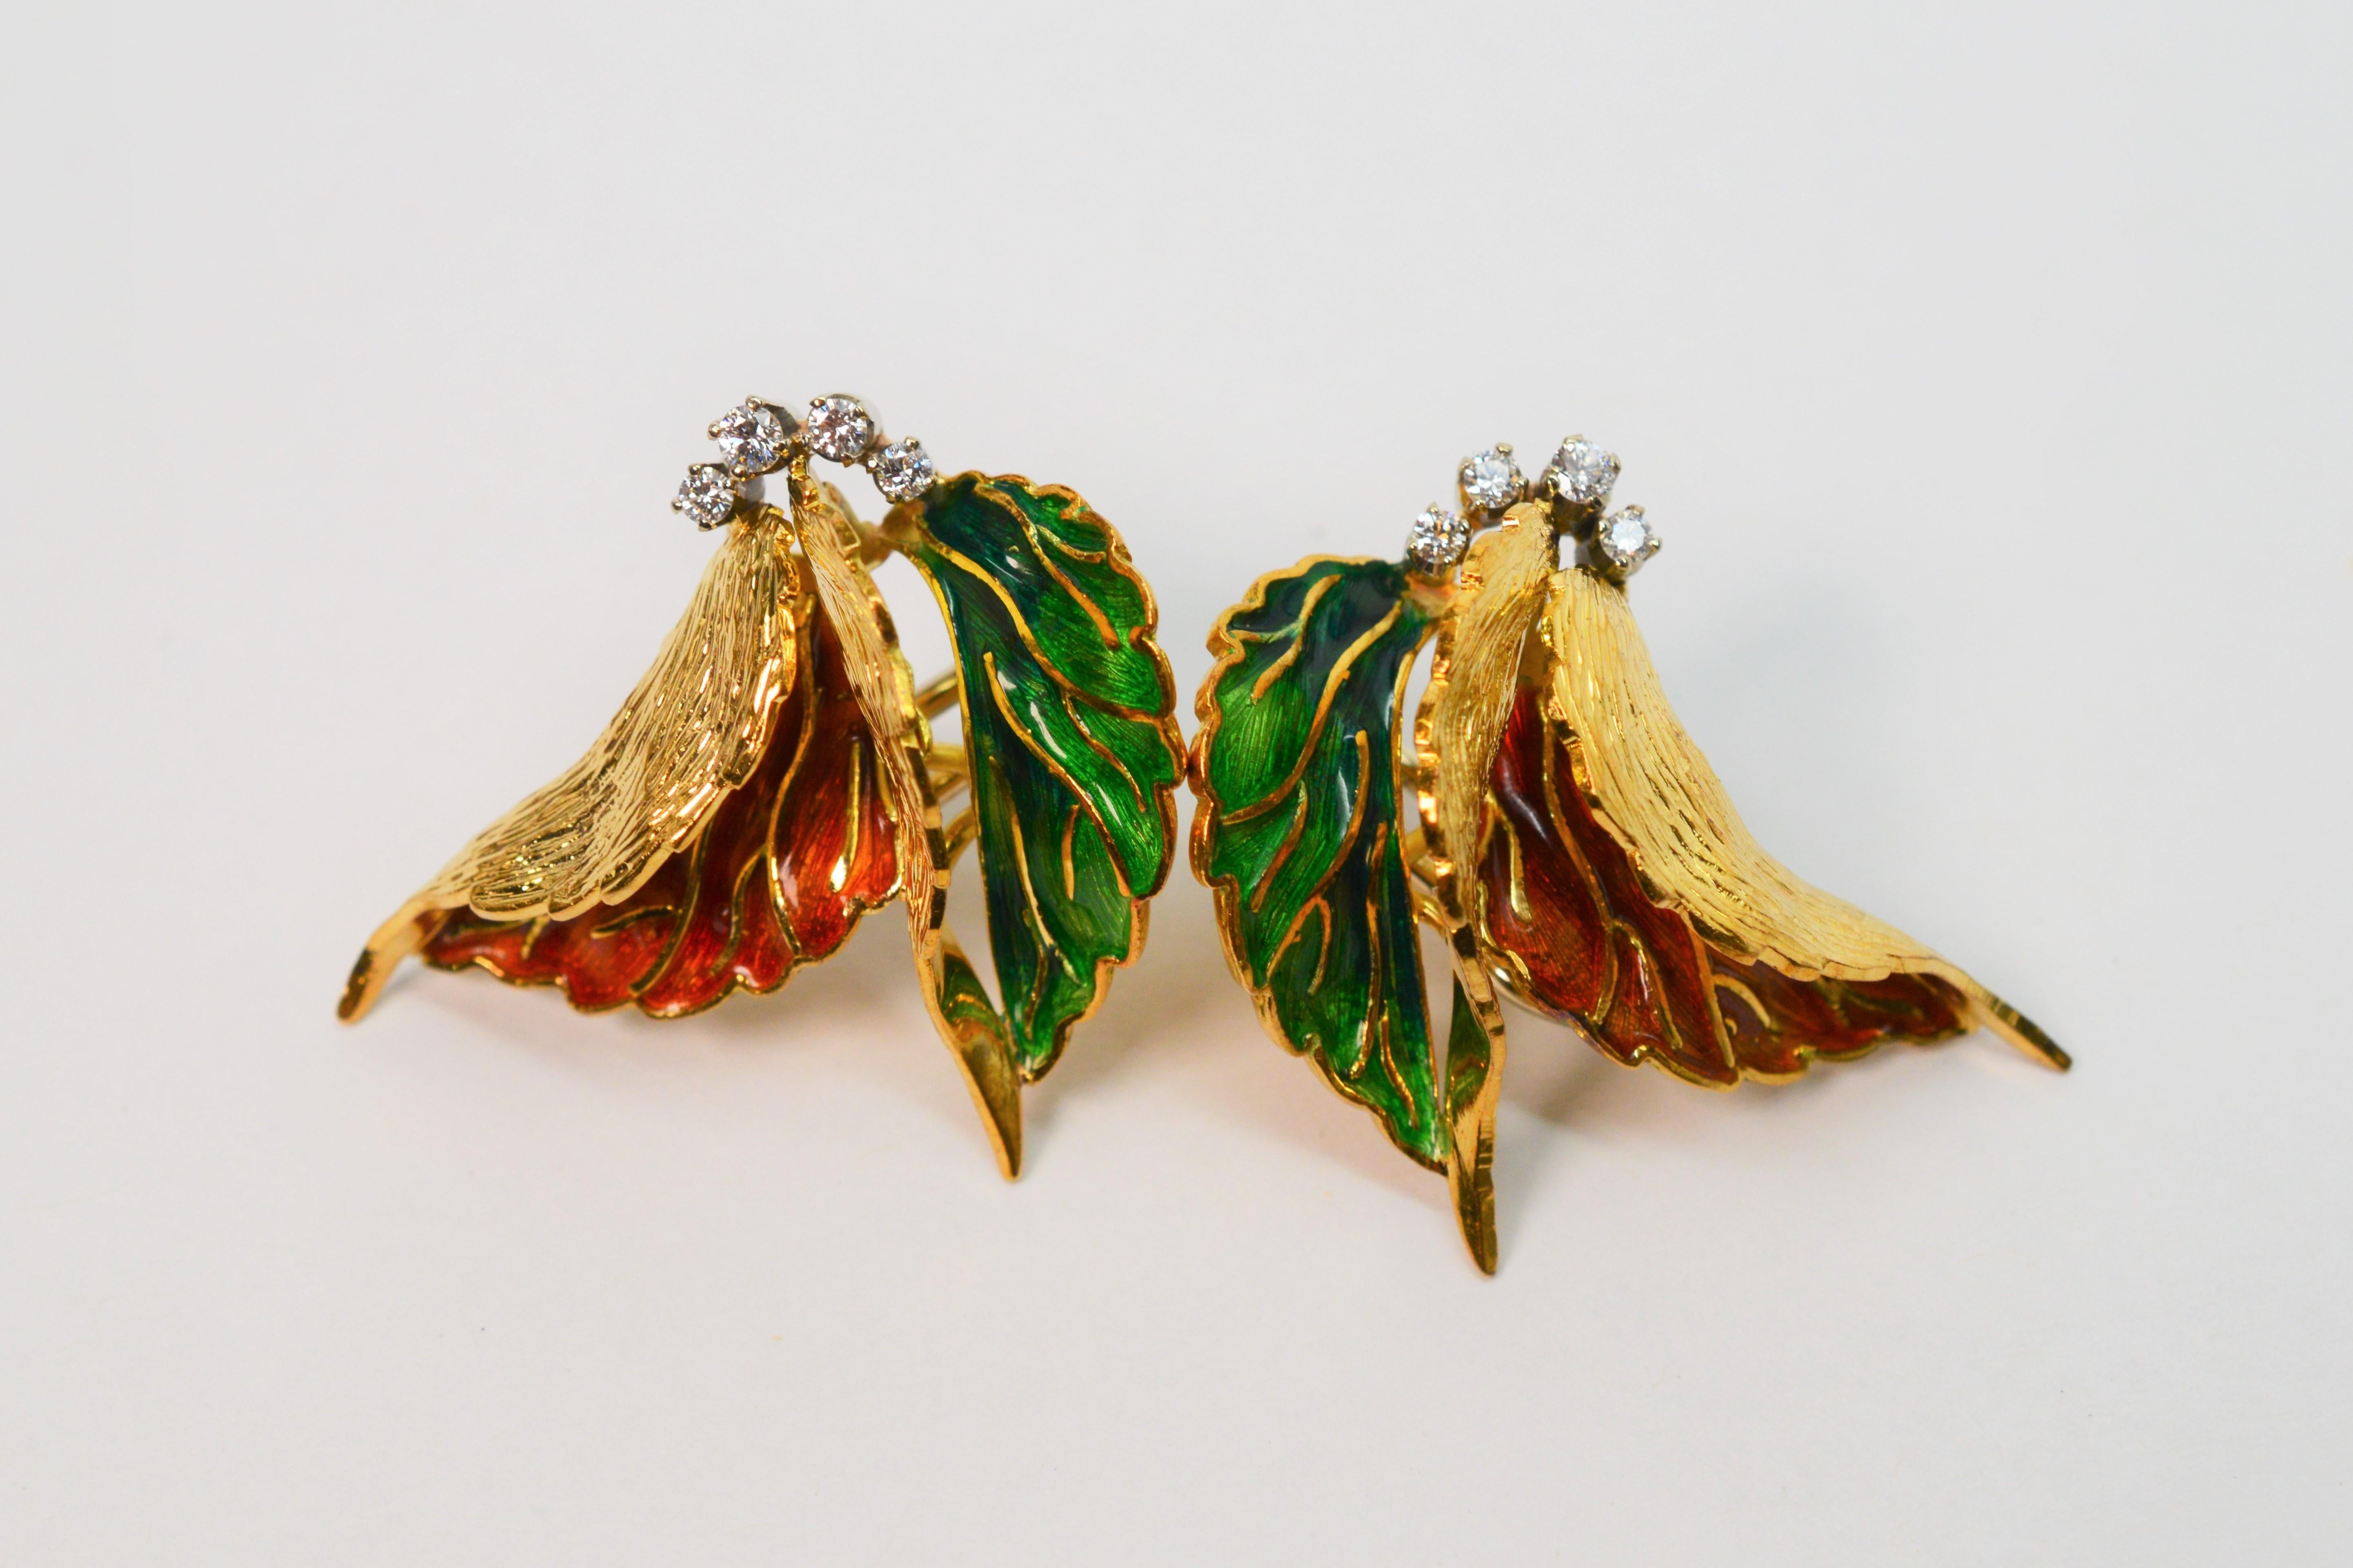 italian gold earrings 18k